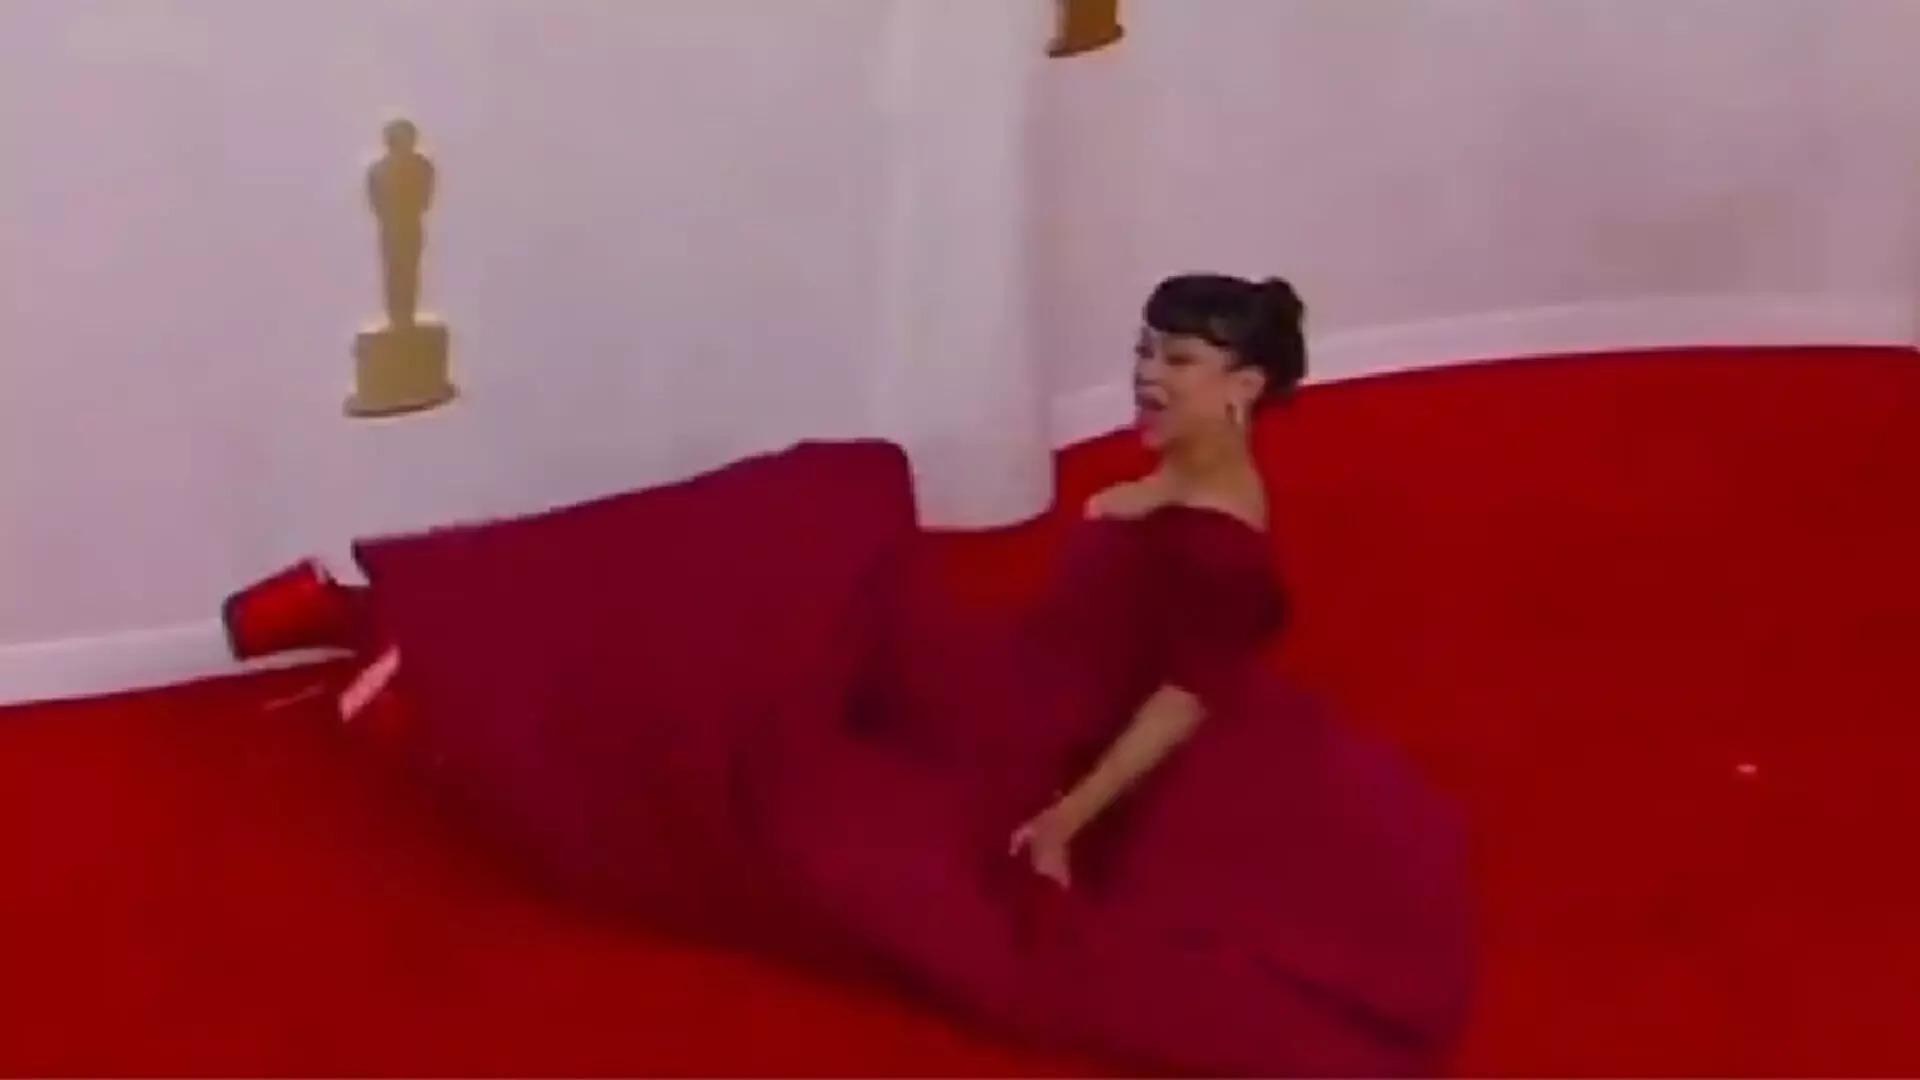 लिजा कोशी ट्रिप्स, रेड कार्पेट पर गिरीं, वीडियो वायरल